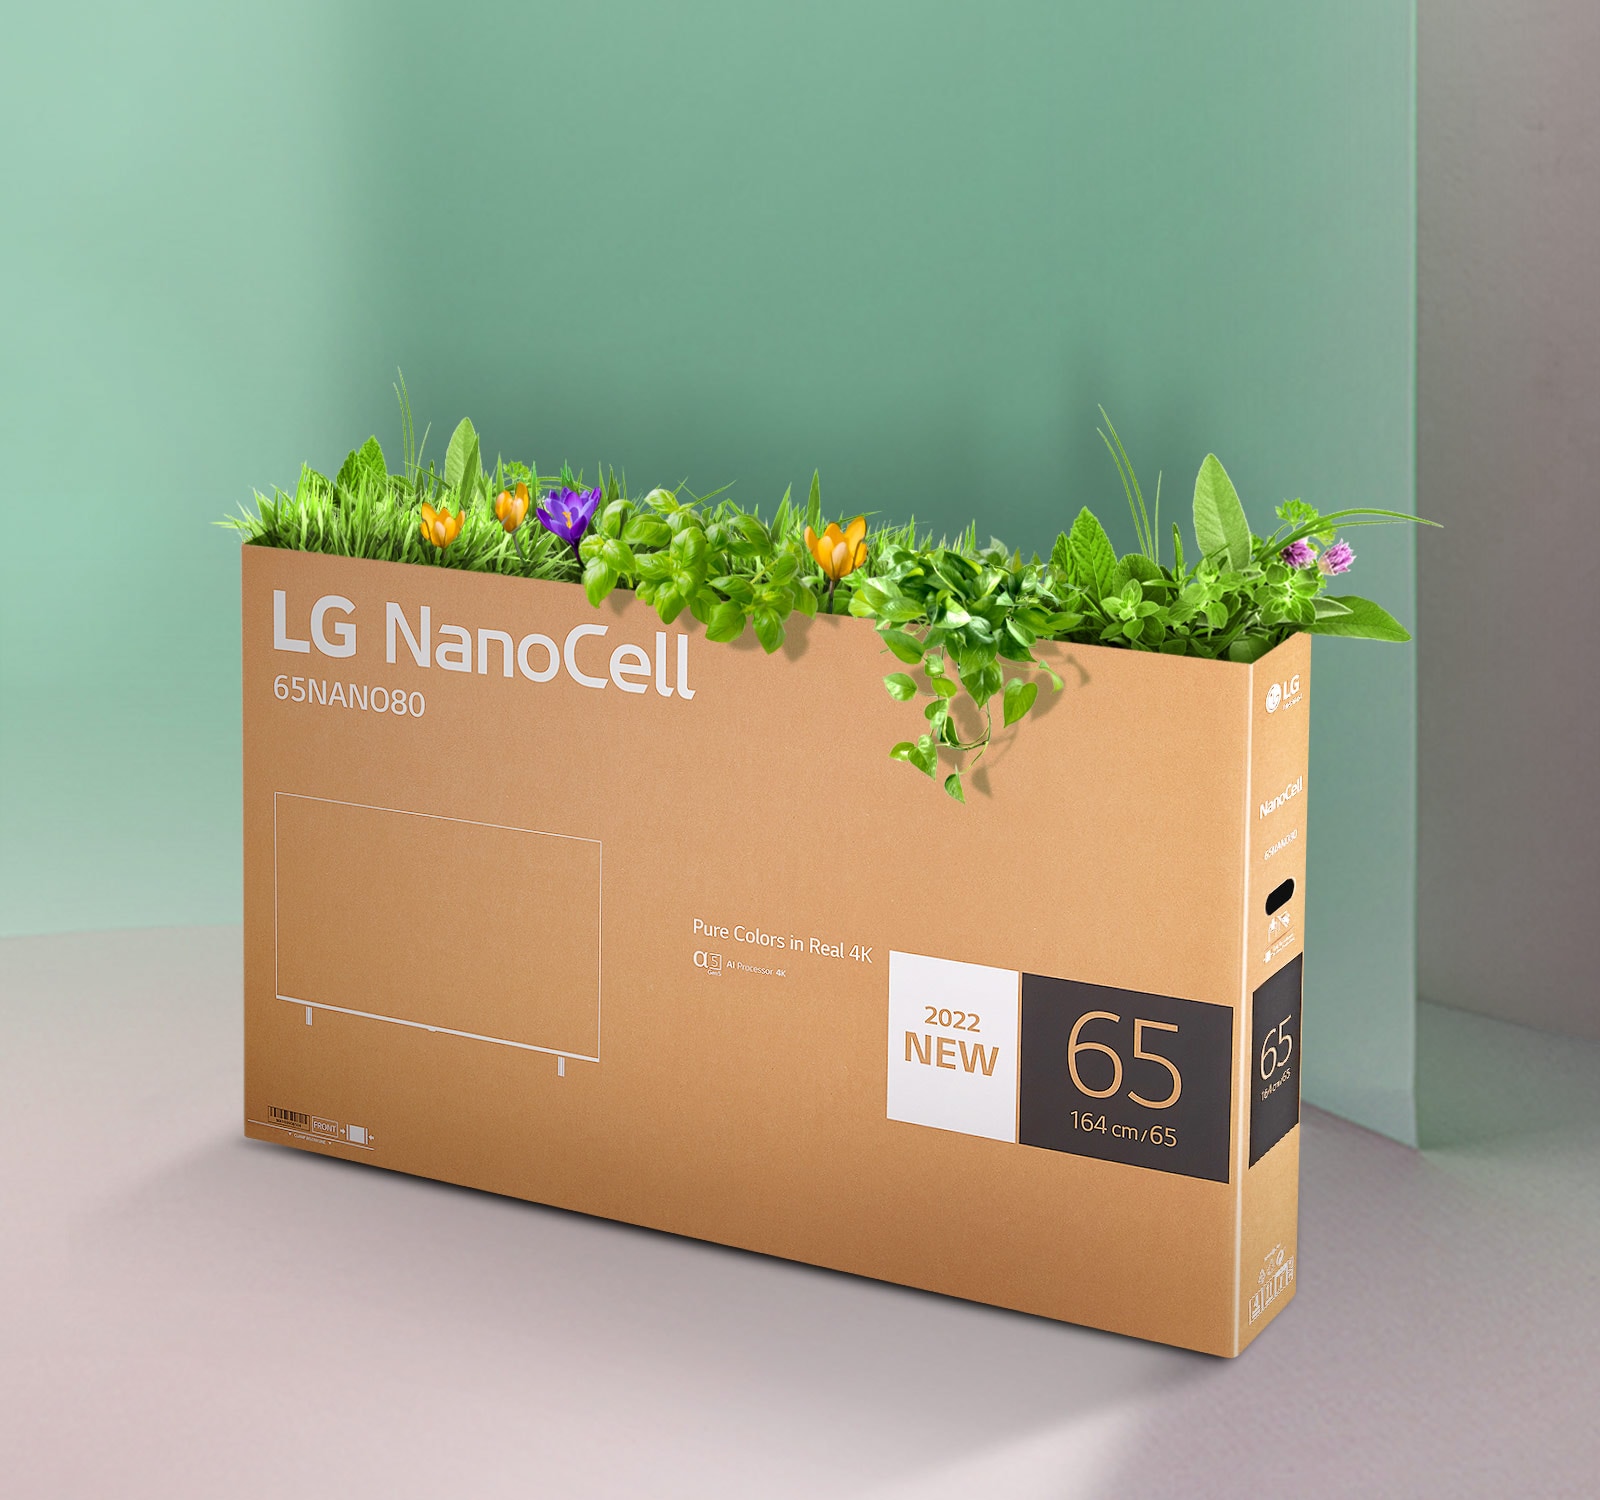 Az LG NanoCell TV újrahasznosítható doboza a doboz tetejéből kihajtó virágokkal és növényekkel.